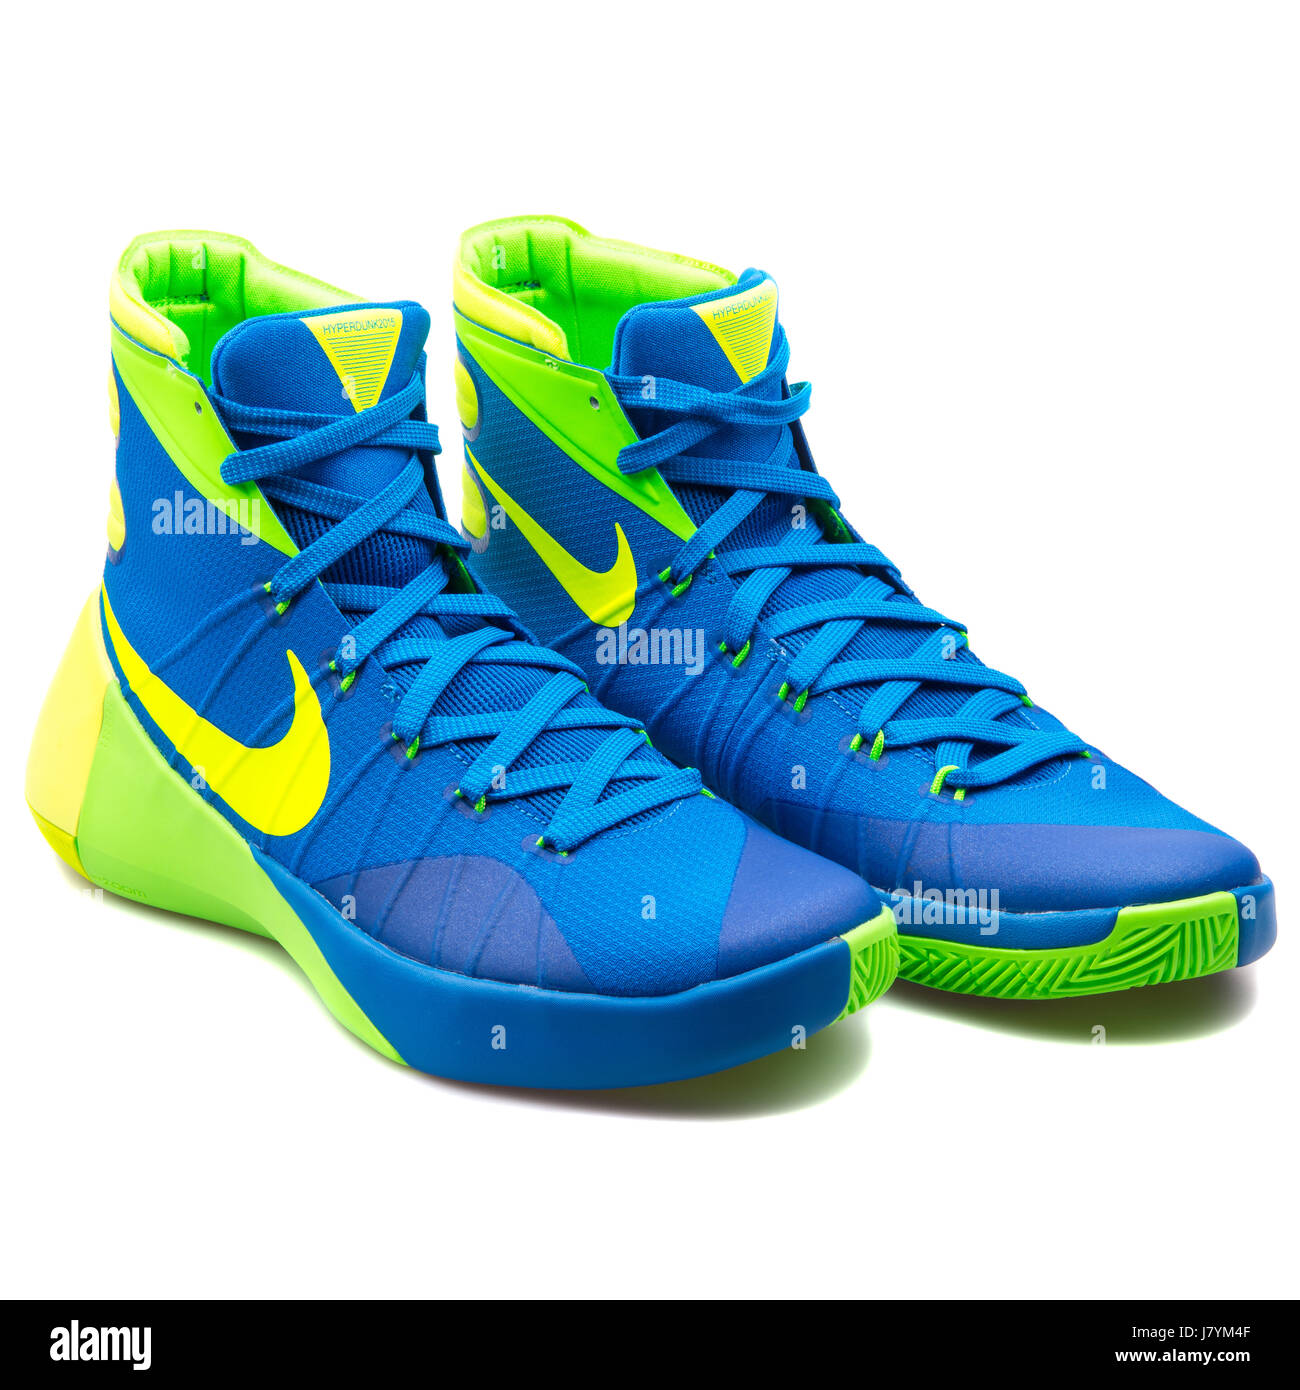 Nike Hyperdunk 2015 hombres azul amarillo y verde zapatillas de baloncesto - Fotografía de stock -